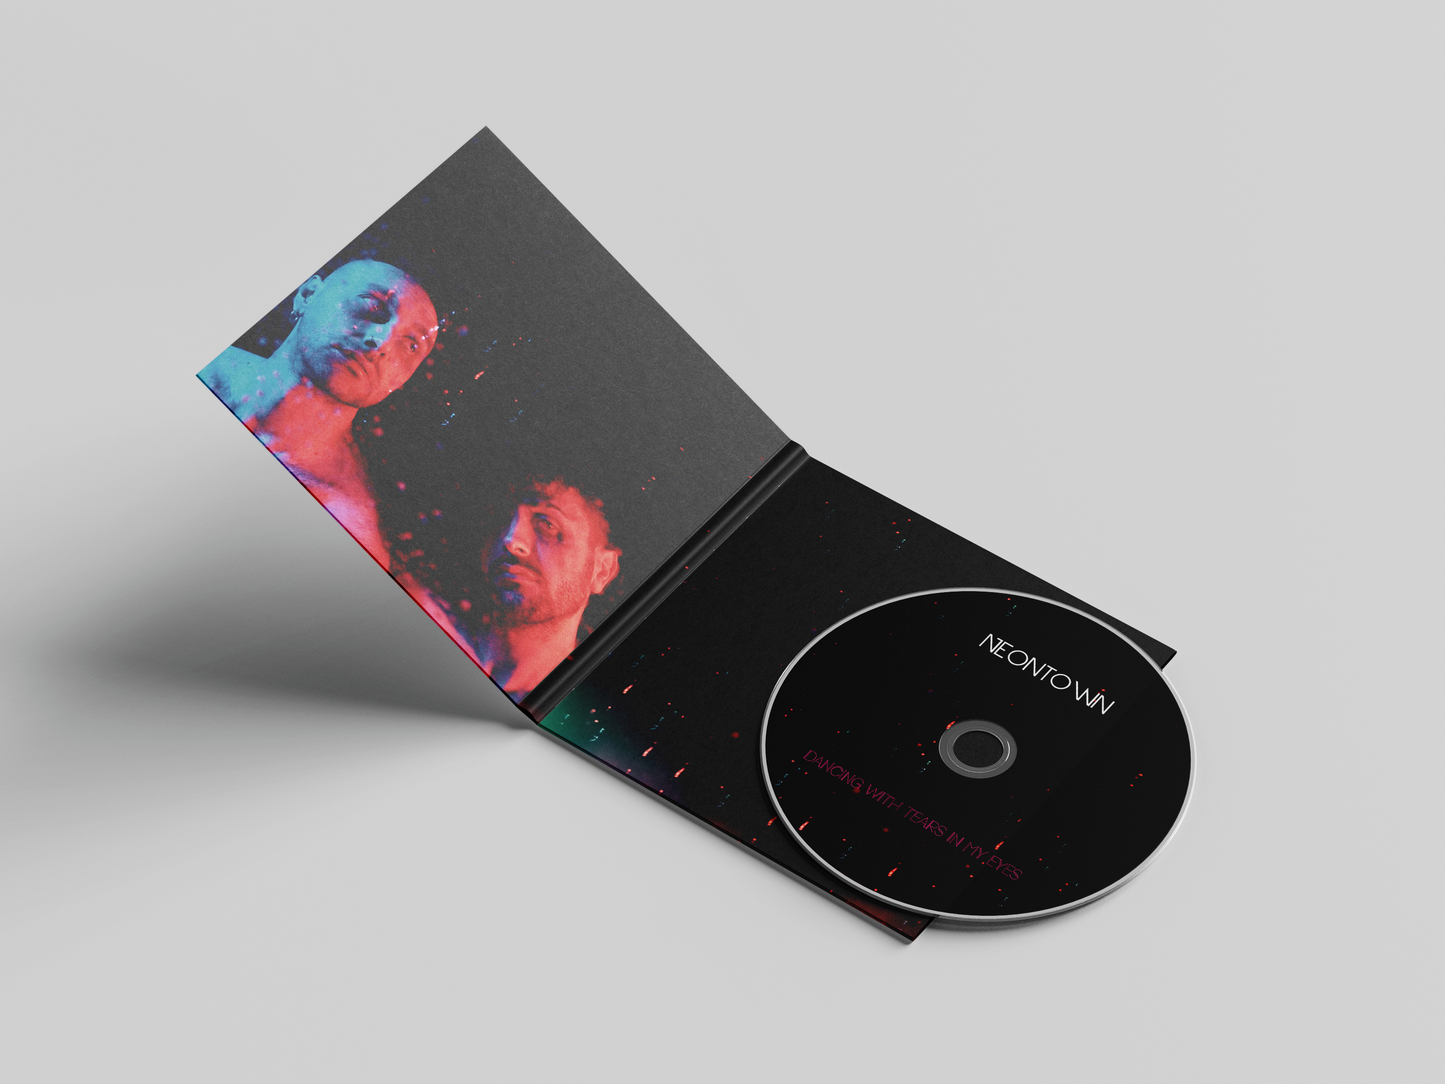 neontown - 'Dancing With Tears In My Eyes' Digipack Album